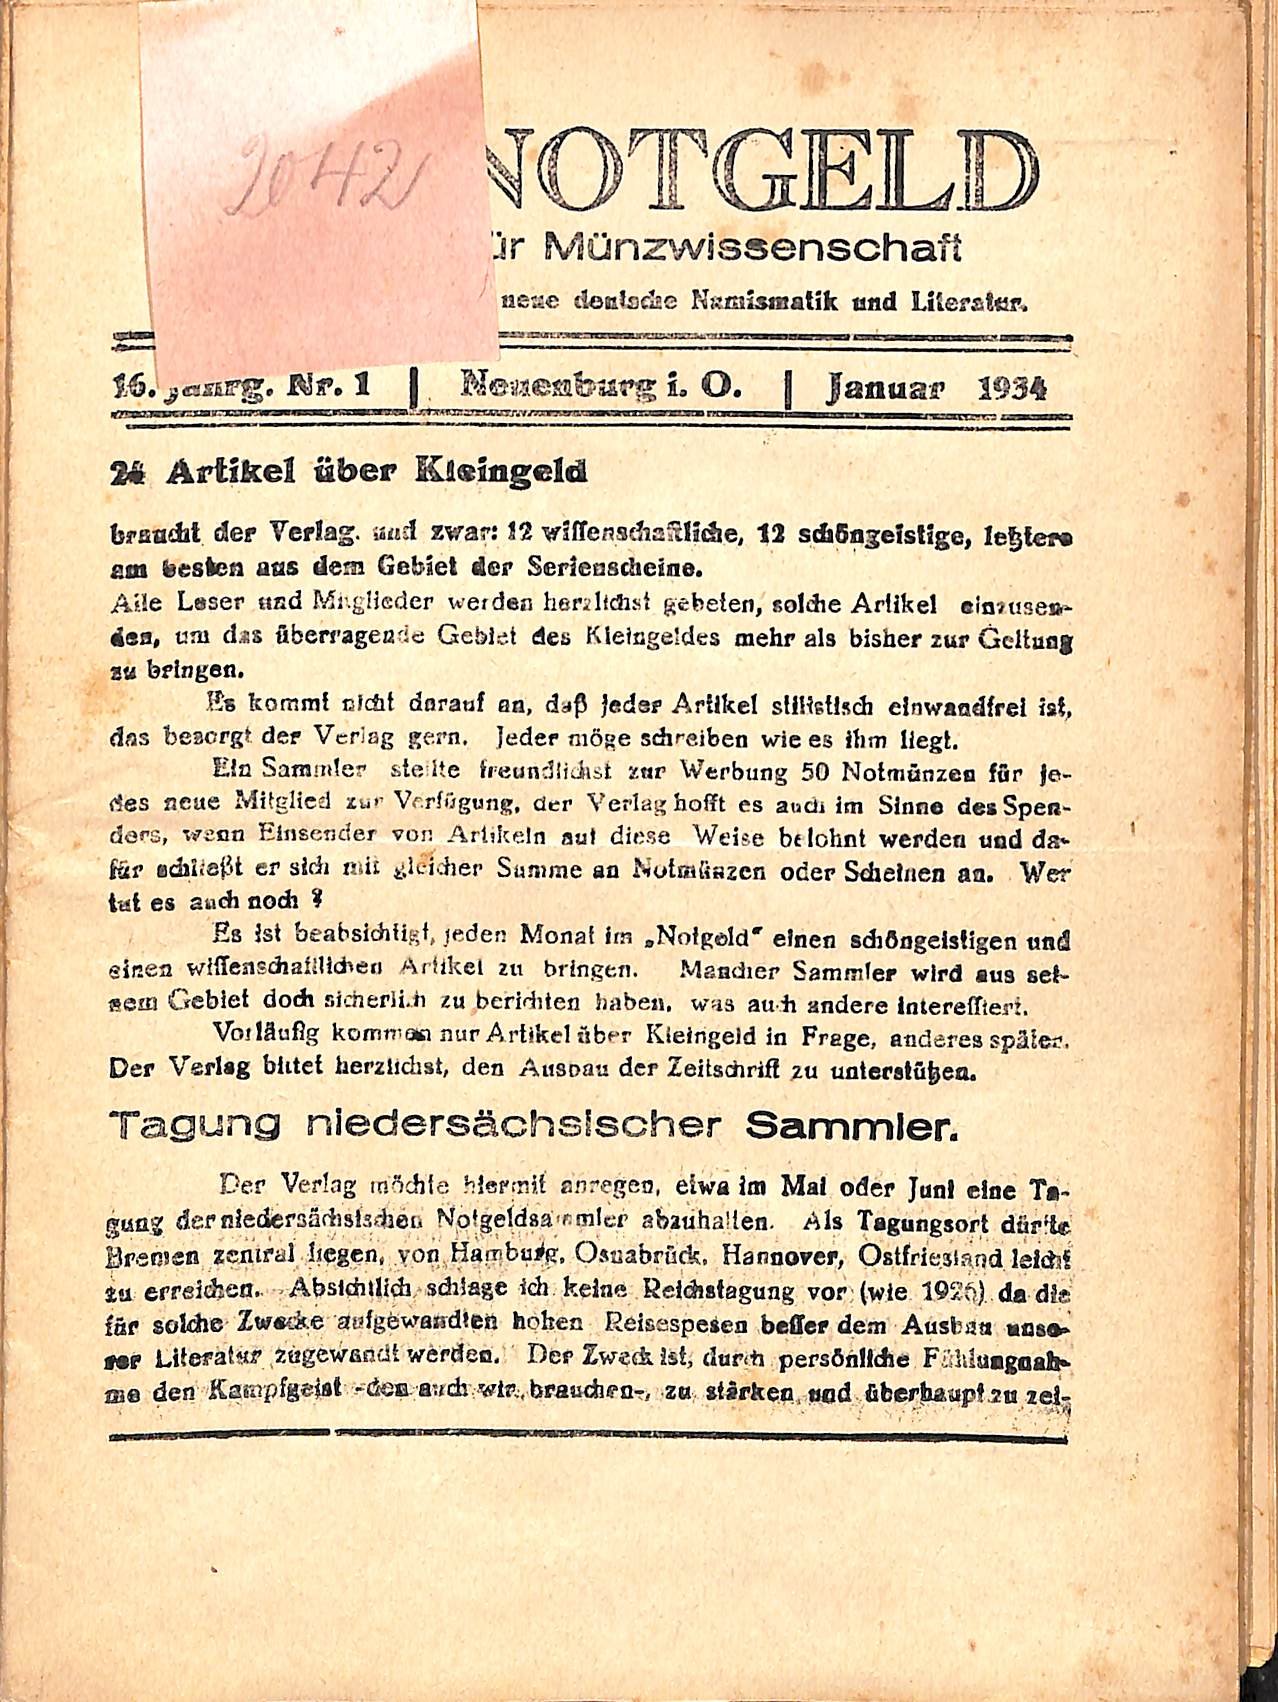 Das Notgeld - Zeitschrift für Münzwissenschaft 16. Jahrgang, Neuenburg am Rhein 1934 (Heimatwelten Zwönitz CC BY-NC-SA)